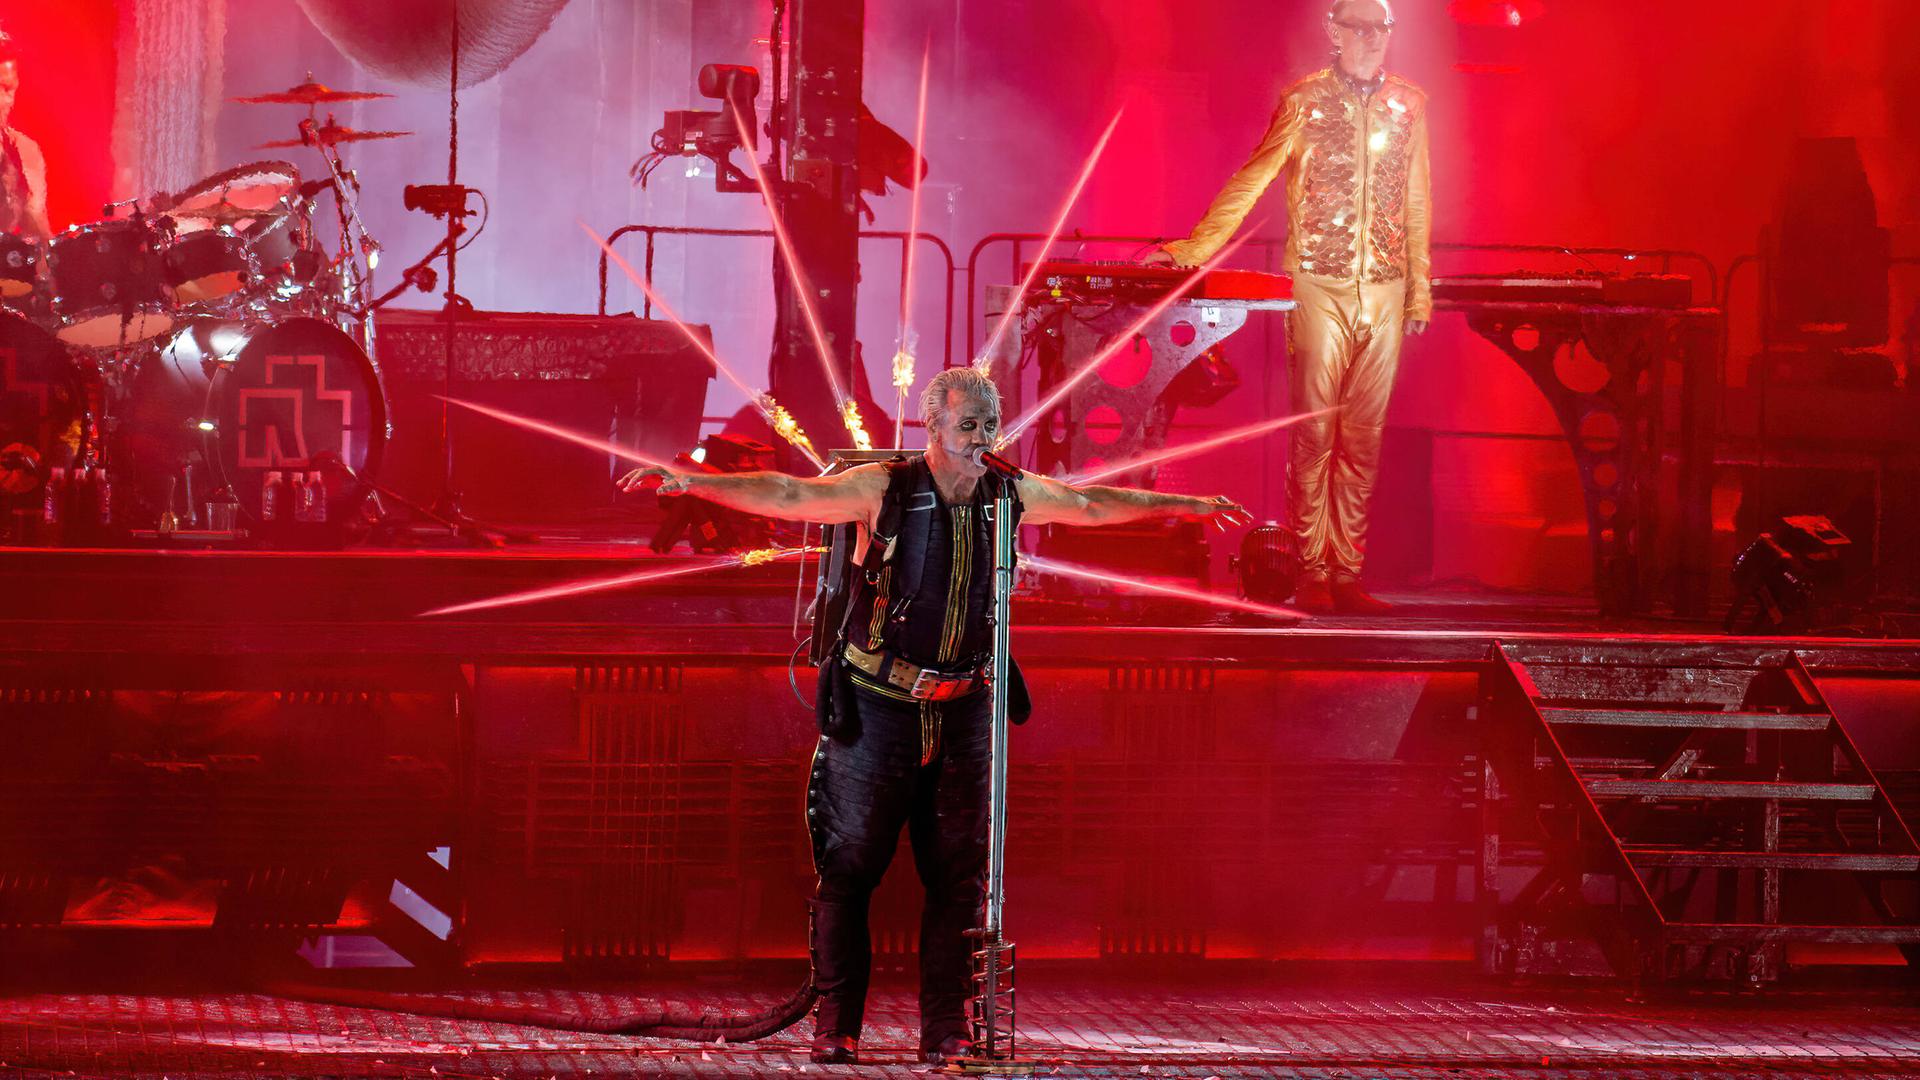 Die Band Rammstein mit Frontmann Till Lindemann, der ein Feuerwerk spuckendes Jetpack auf dem Rücken trägt, in roten Licht getaucht bei einem Konzert in Aarhus, Dänemark